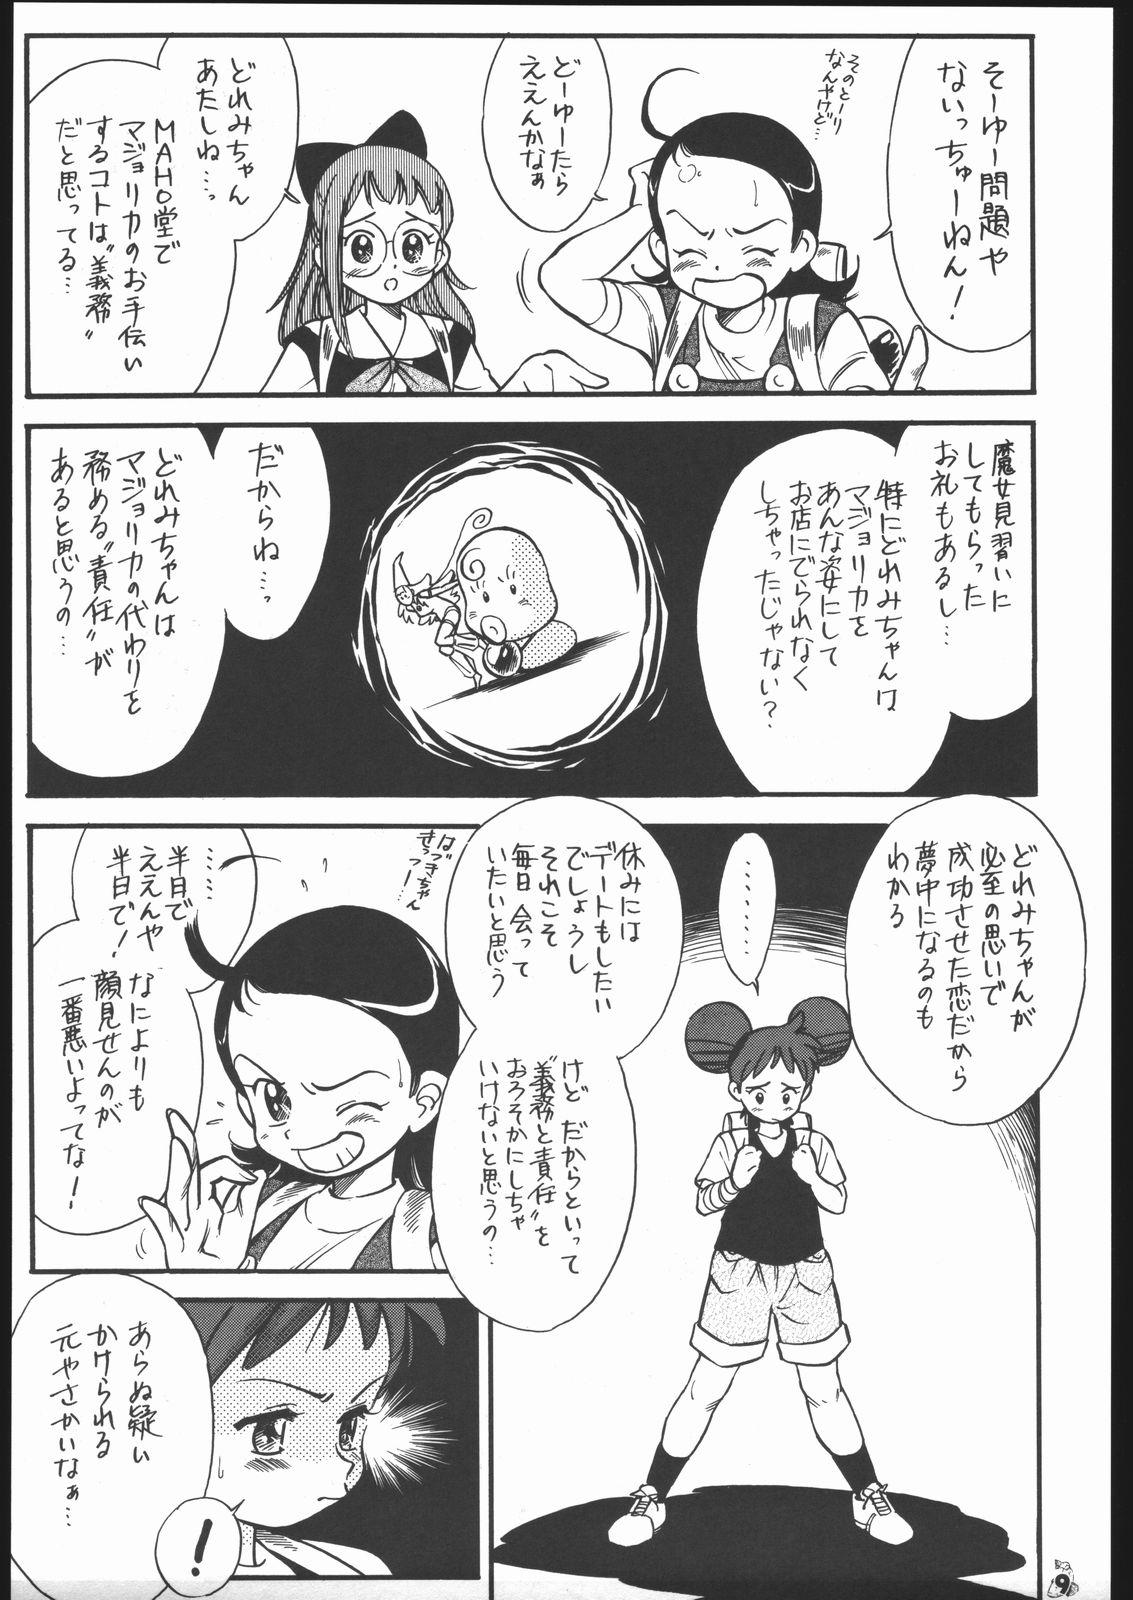 Big Cock Oudou - Sakura taisen Ojamajo doremi Virtua fighter Pussy To Mouth - Page 8